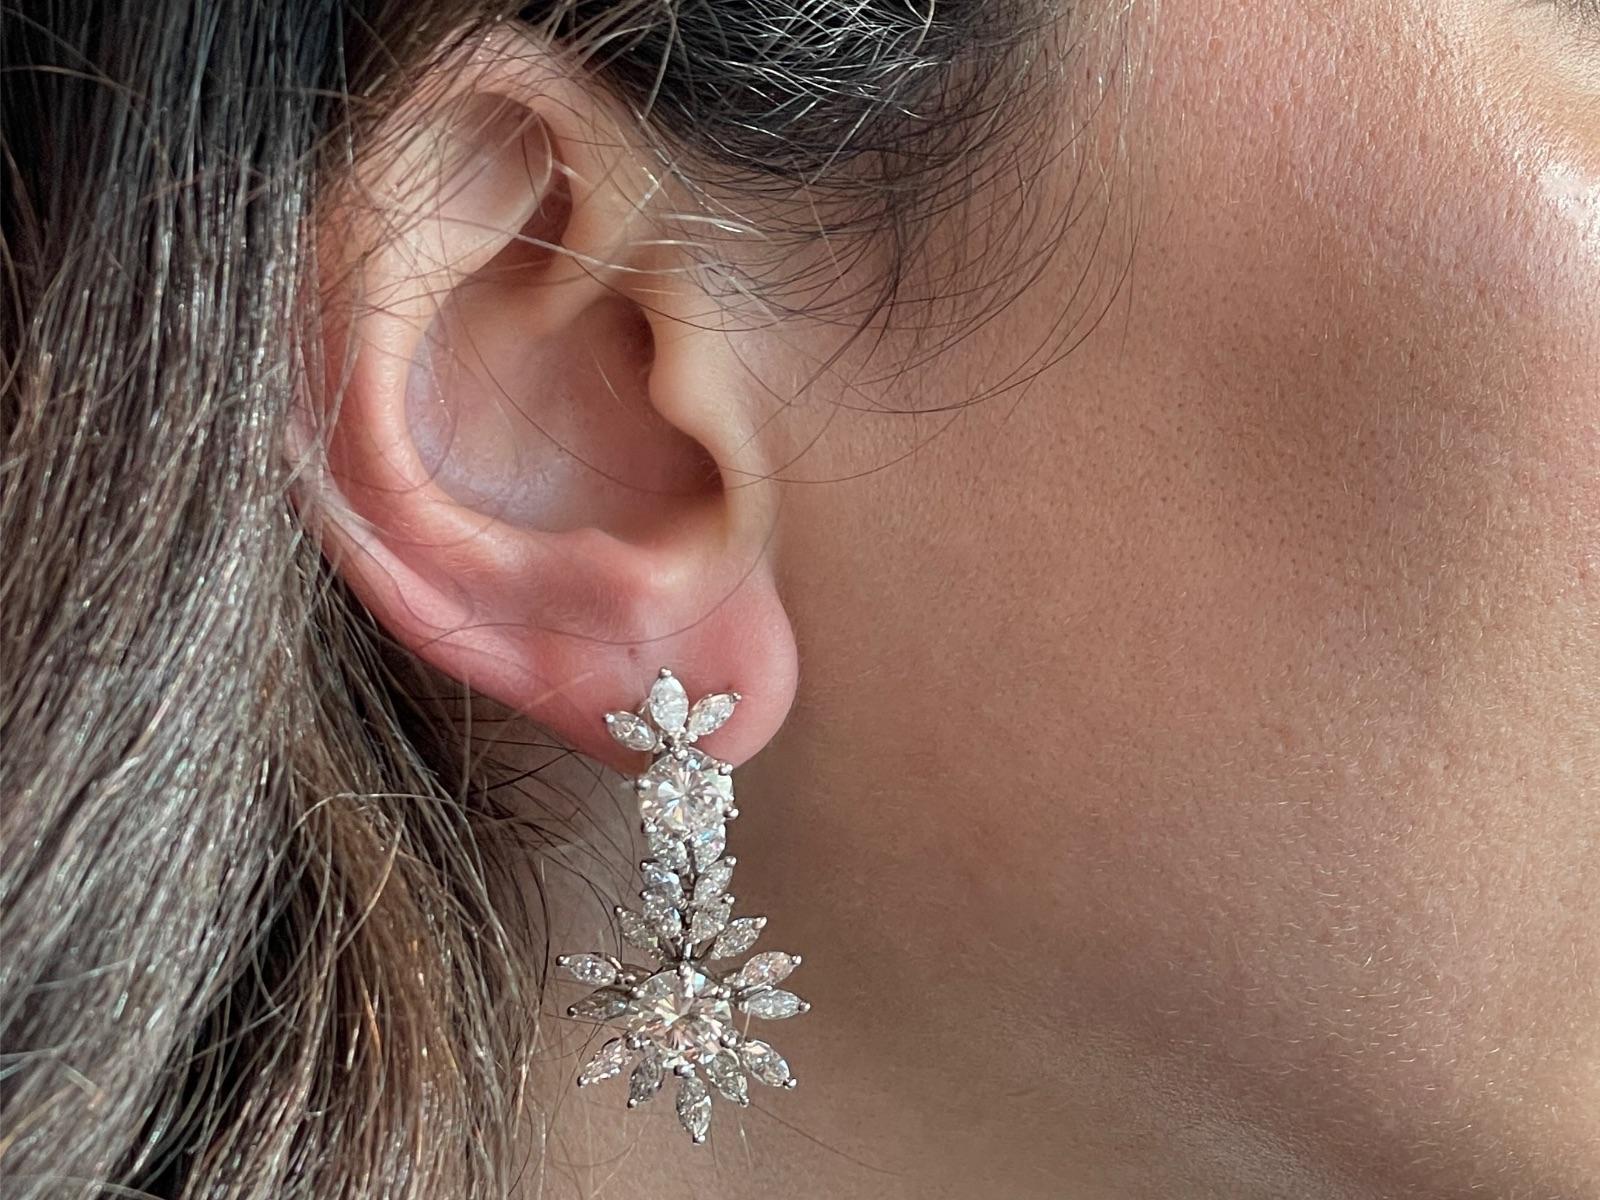 Wir präsentieren diese exquisiten Ohrringe, die mit viel Liebe zum Detail gefertigt und mit atemberaubenden Diamanten besetzt sind. Das erste Paar besteht aus zwei schillernden Diamanten im Brillantschliff mit einem Gewicht von jeweils 3,40 Karat.